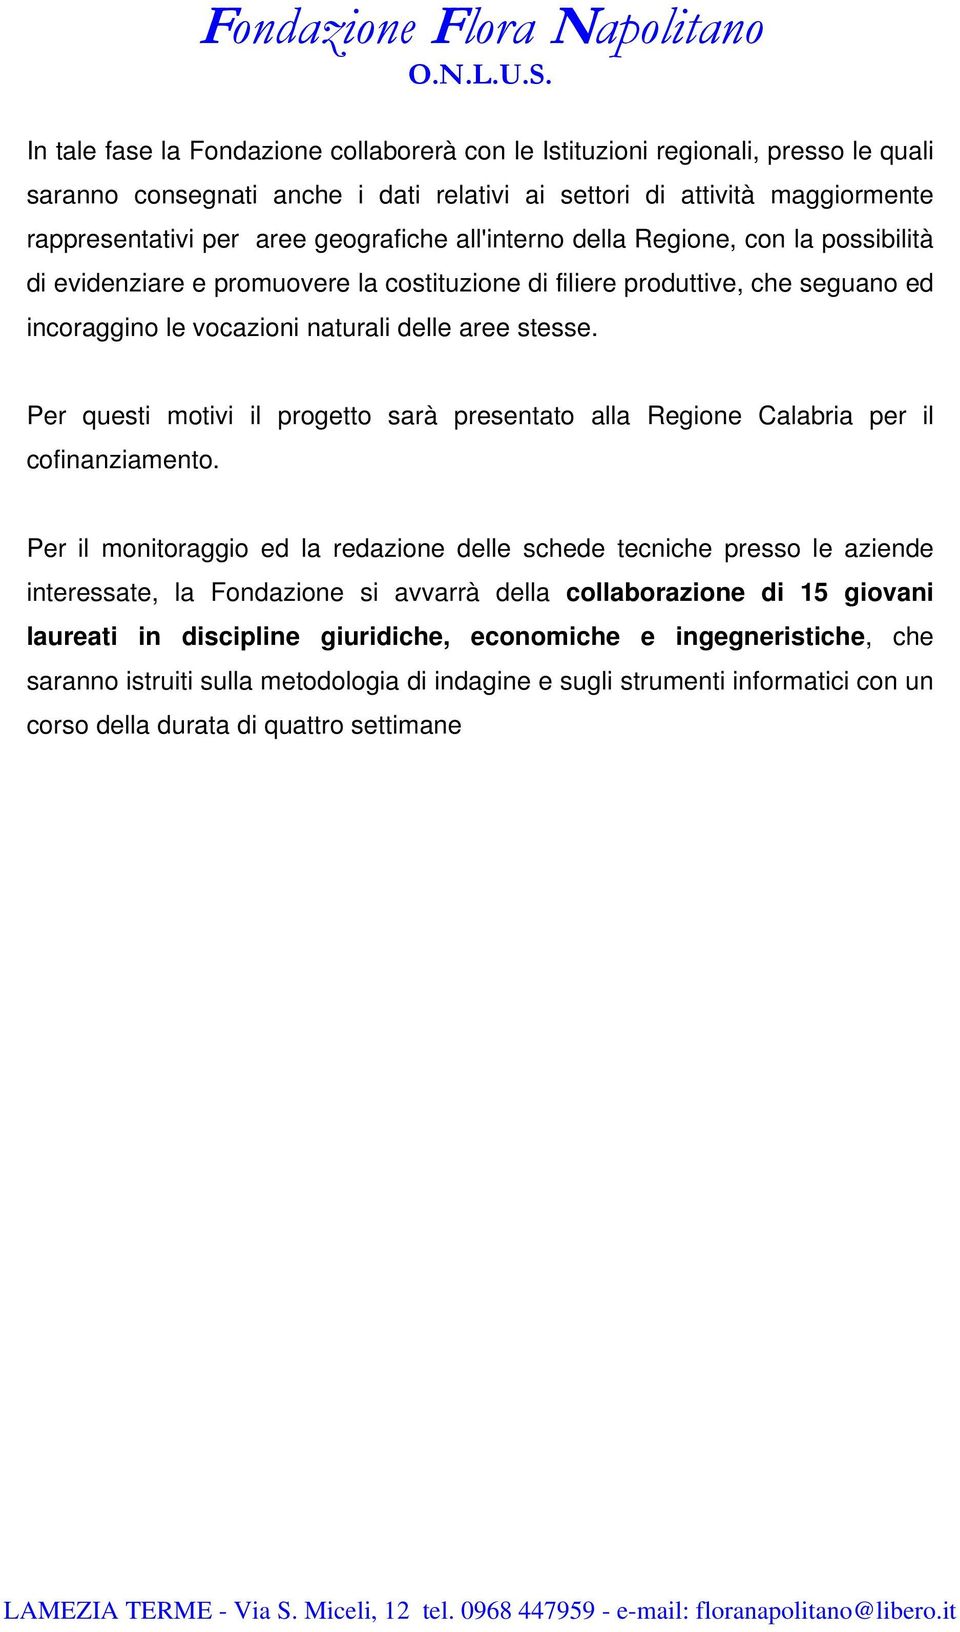 Per questi motivi il progetto sarà presentato alla Regione Calabria per il cofinanziamento.